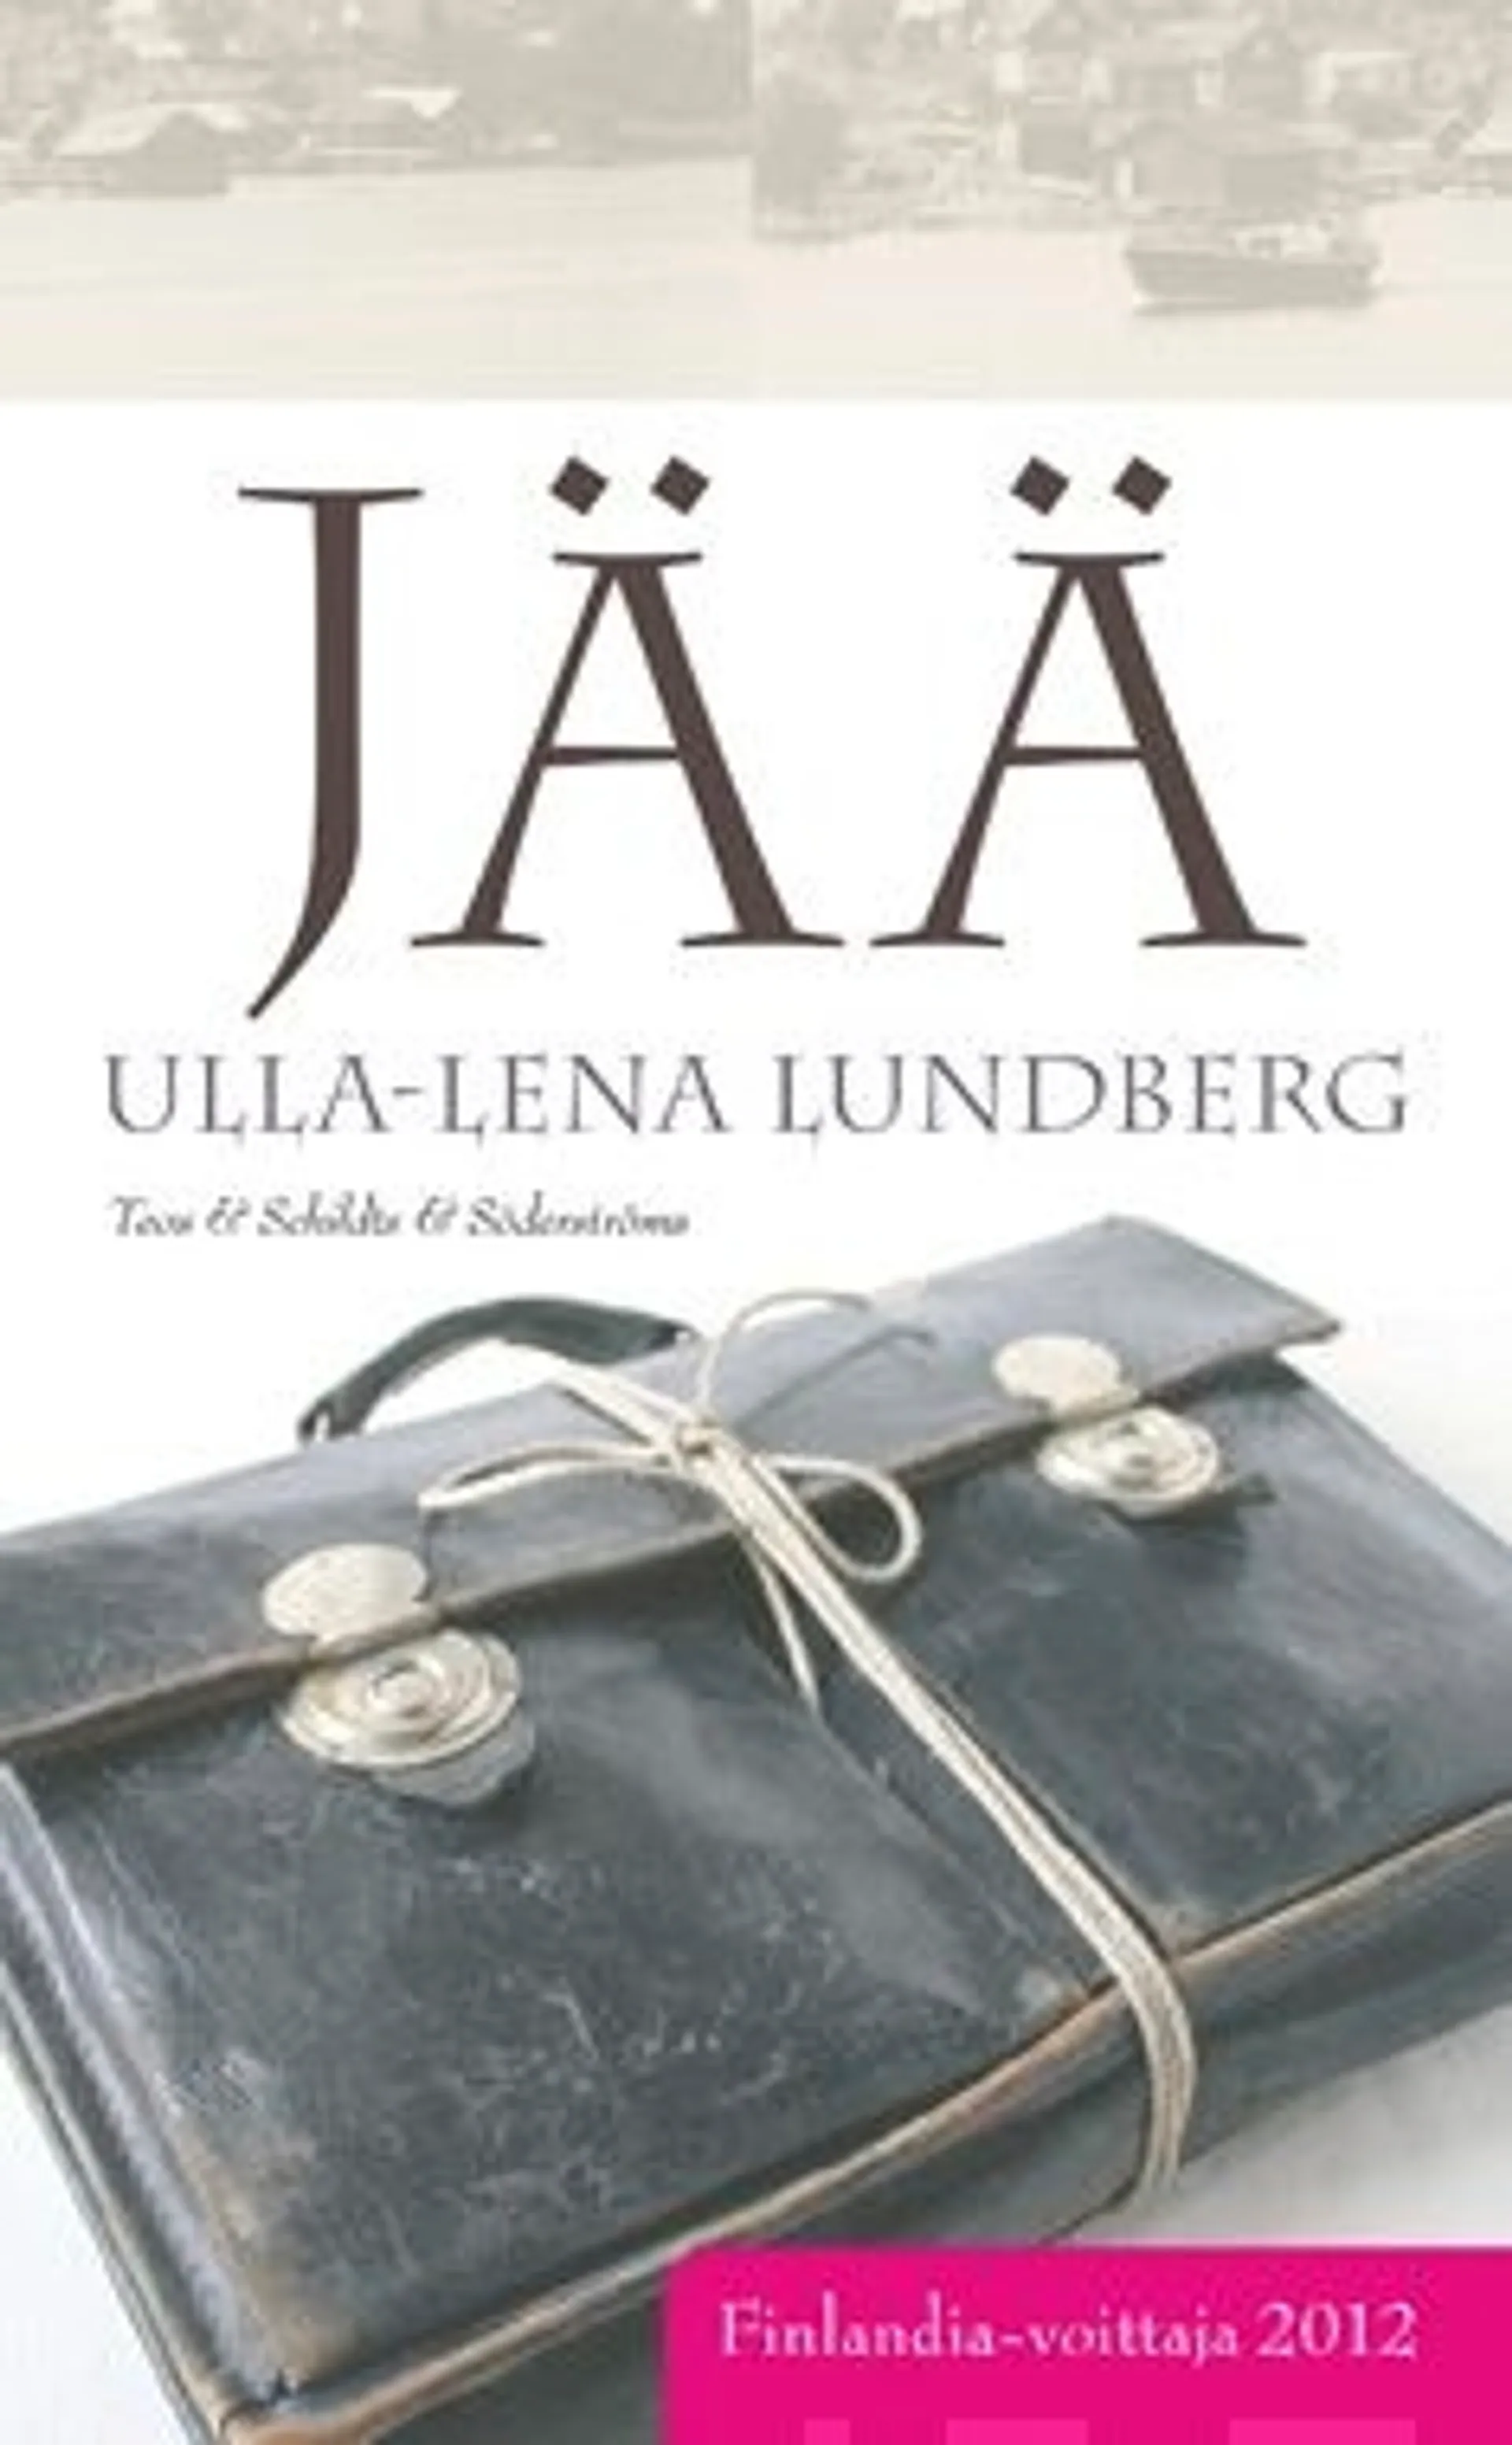 Lundberg, Jää